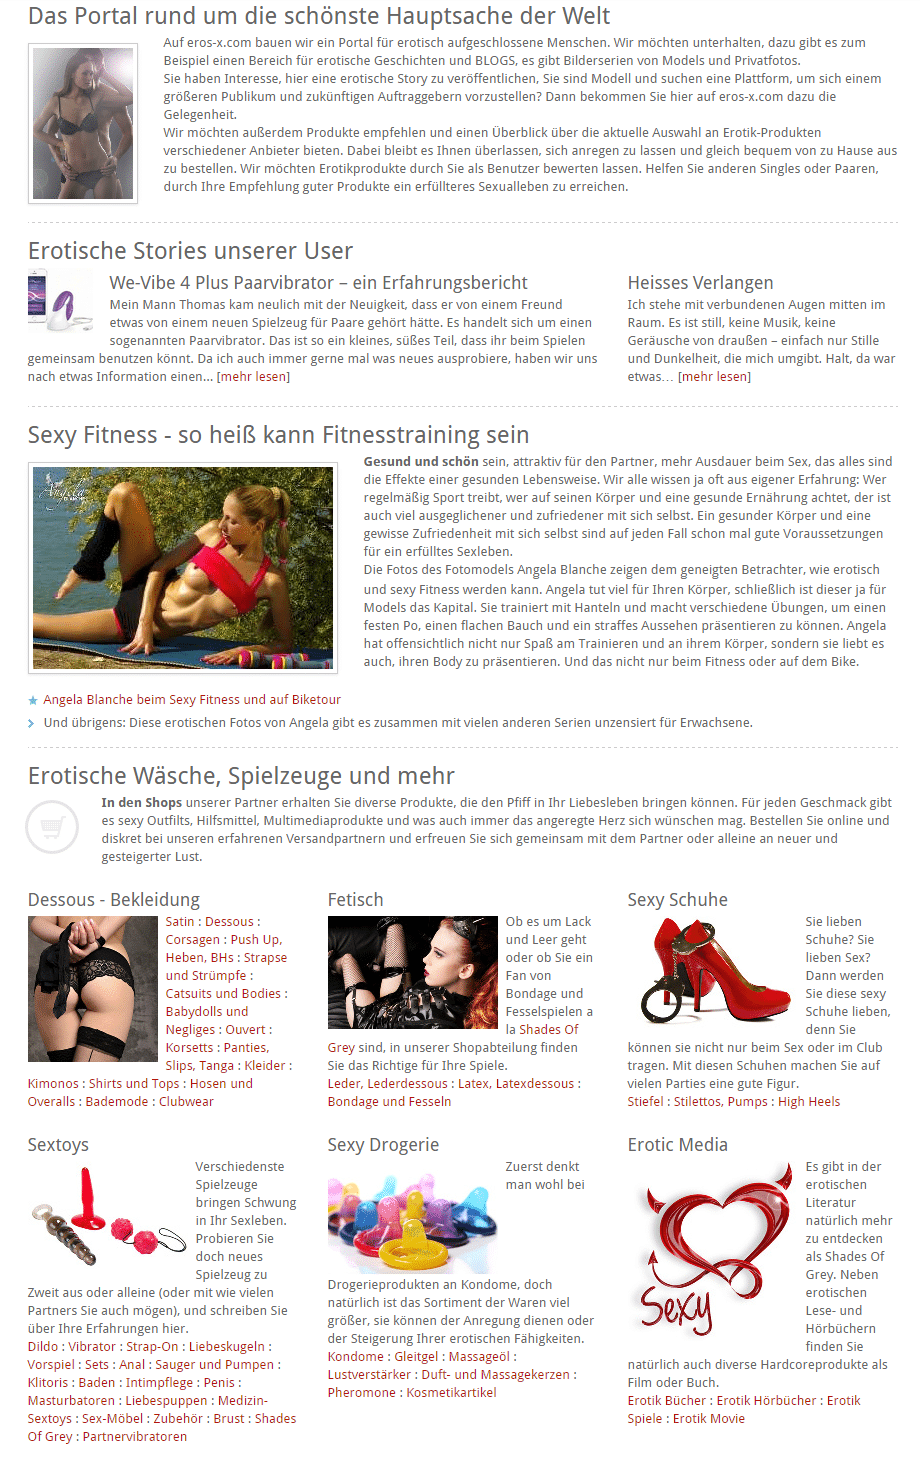 Eros-X.com (Screenshot vom Juli 2015)